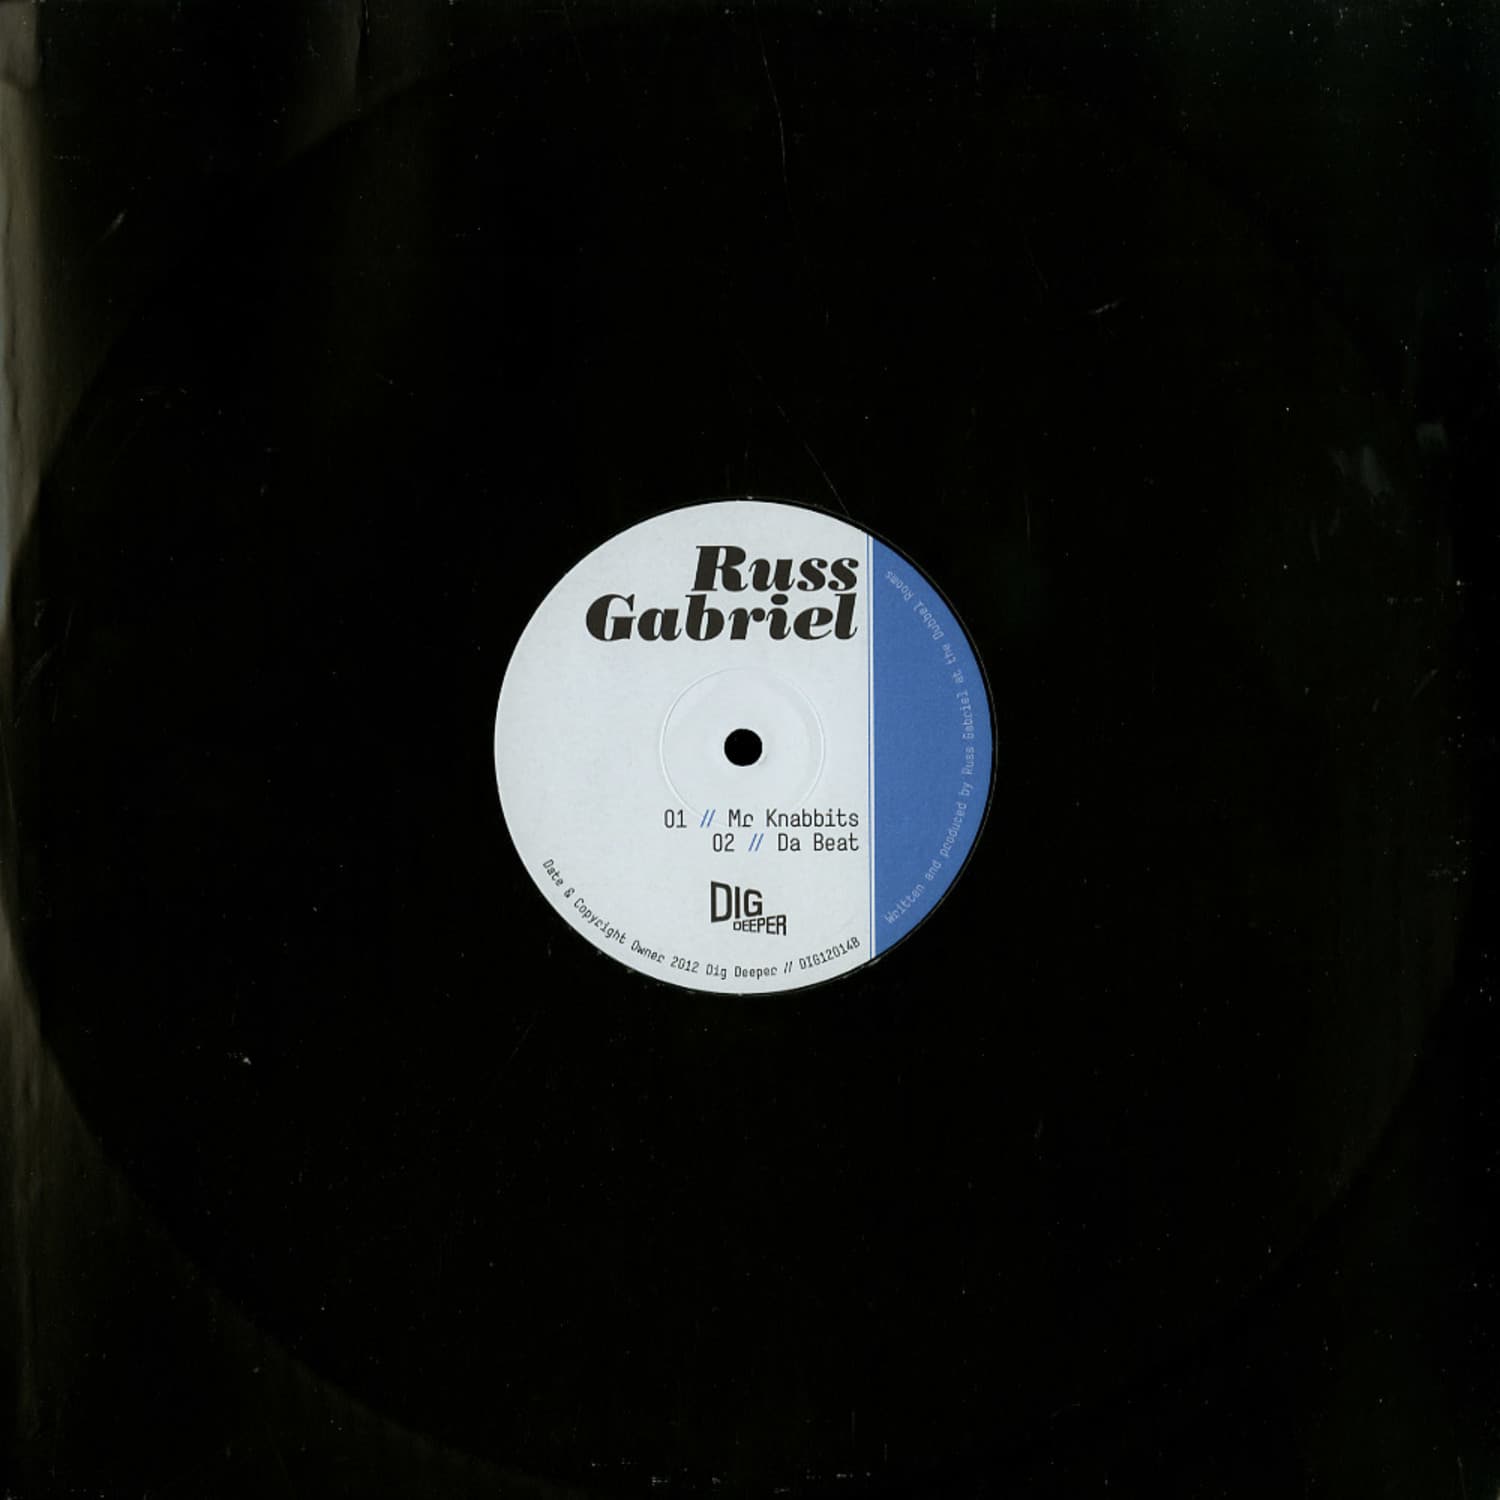 Russ Gabriel - MR. KNABBITS EP